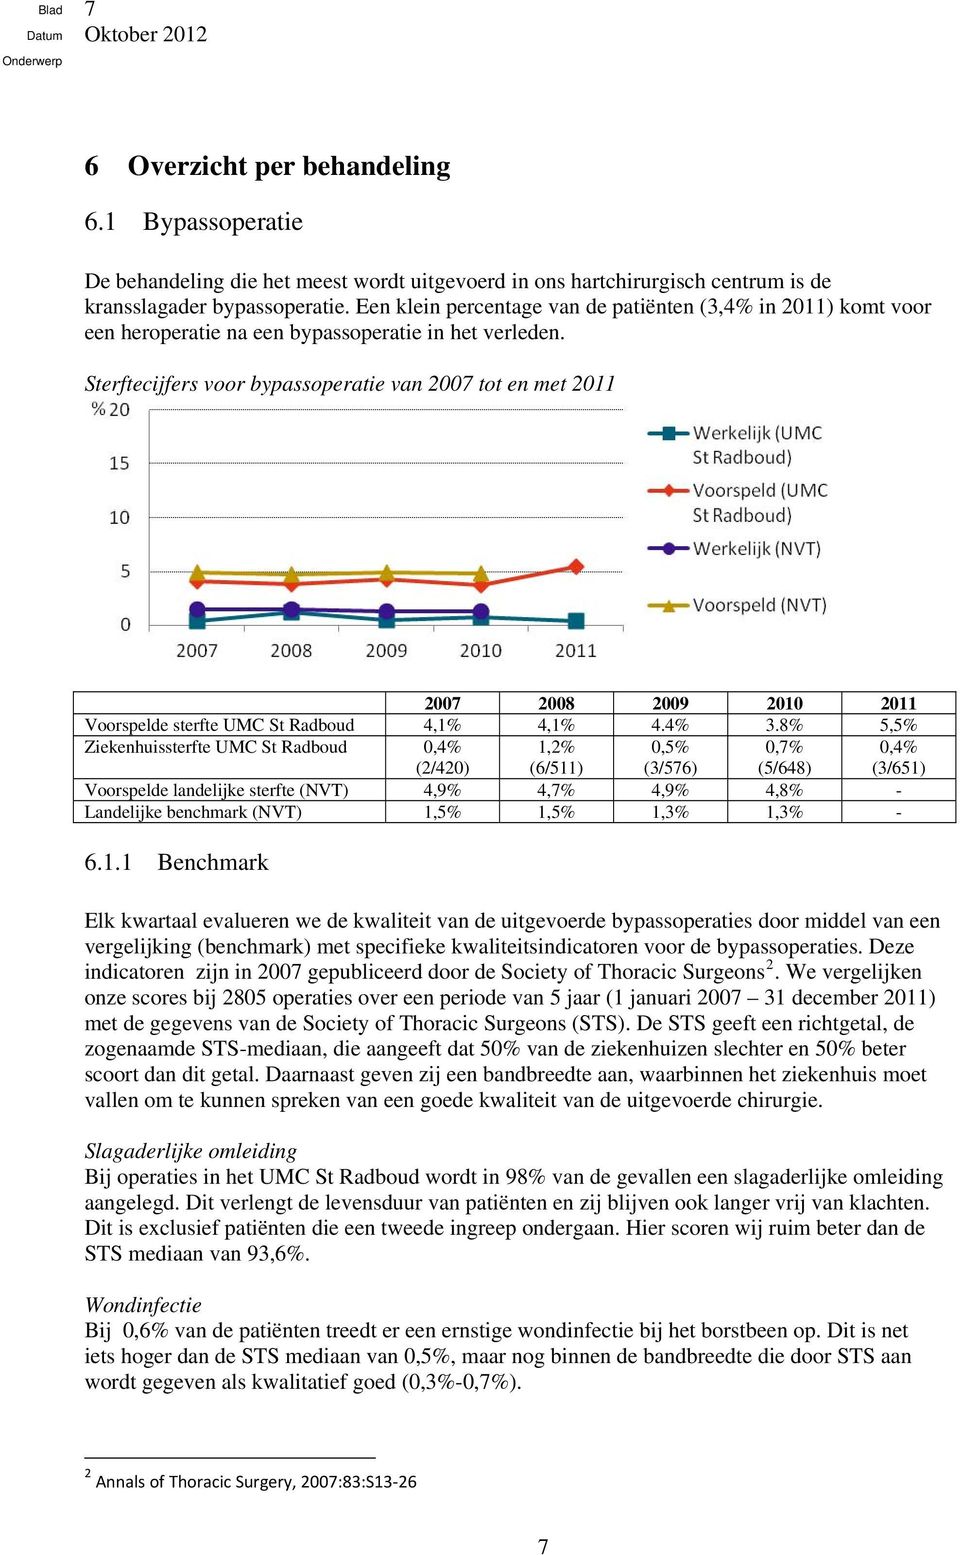 Sterftecijfers voor bypassoperatie van 2007 tot en met 2011 2007 2008 2009 2010 2011 Voorspelde sterfte UMC St Radboud 4,1% 4,1% 4.4% 3.